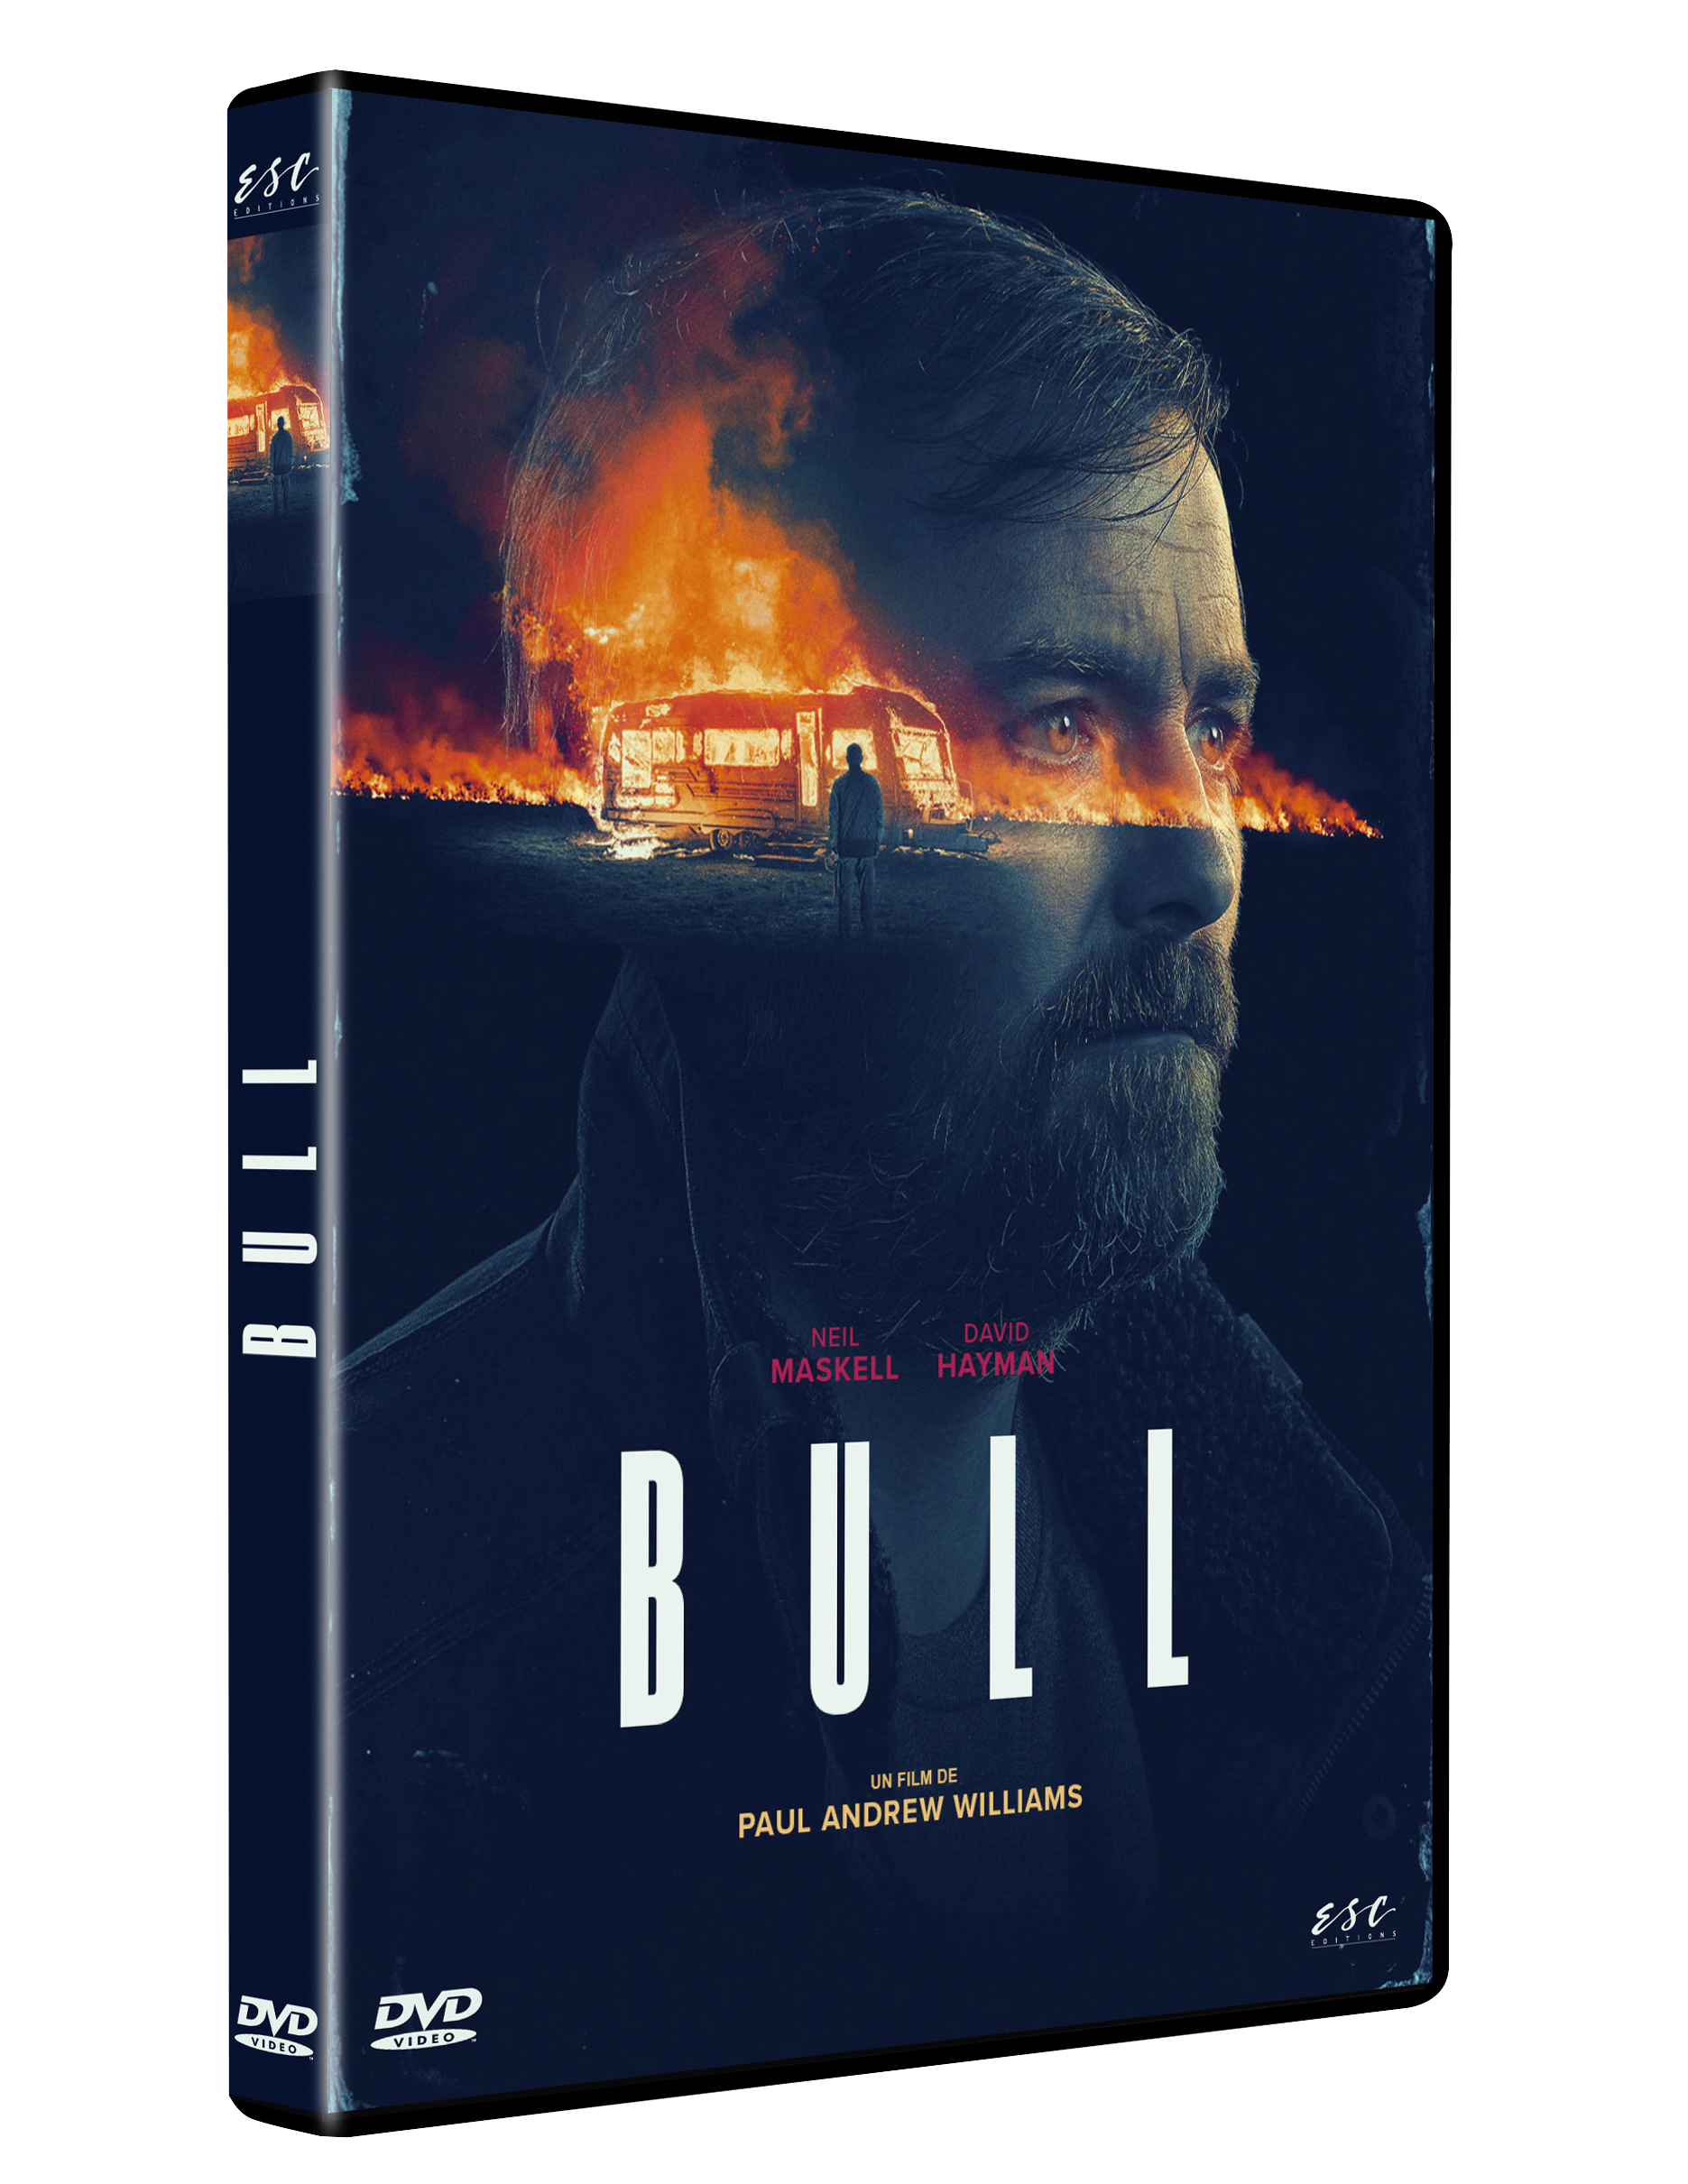 BULL - DVD